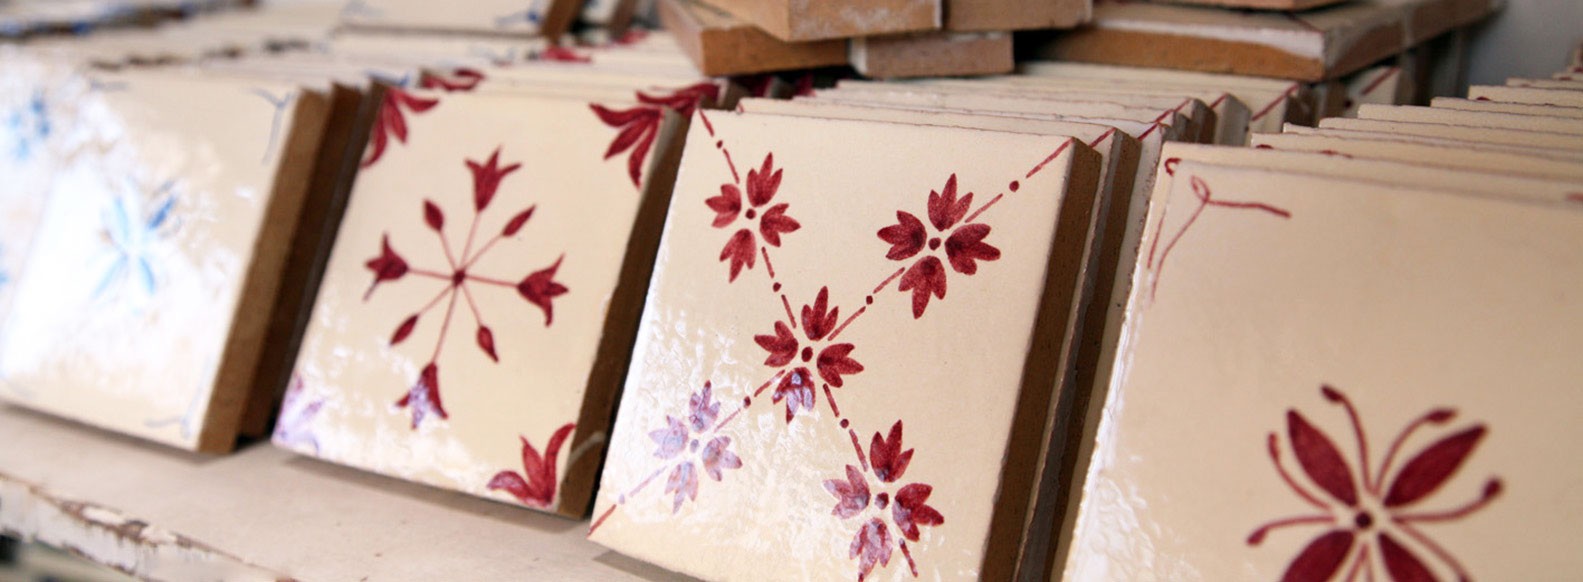 Ordering handmade ceramic tiles for your kitchen